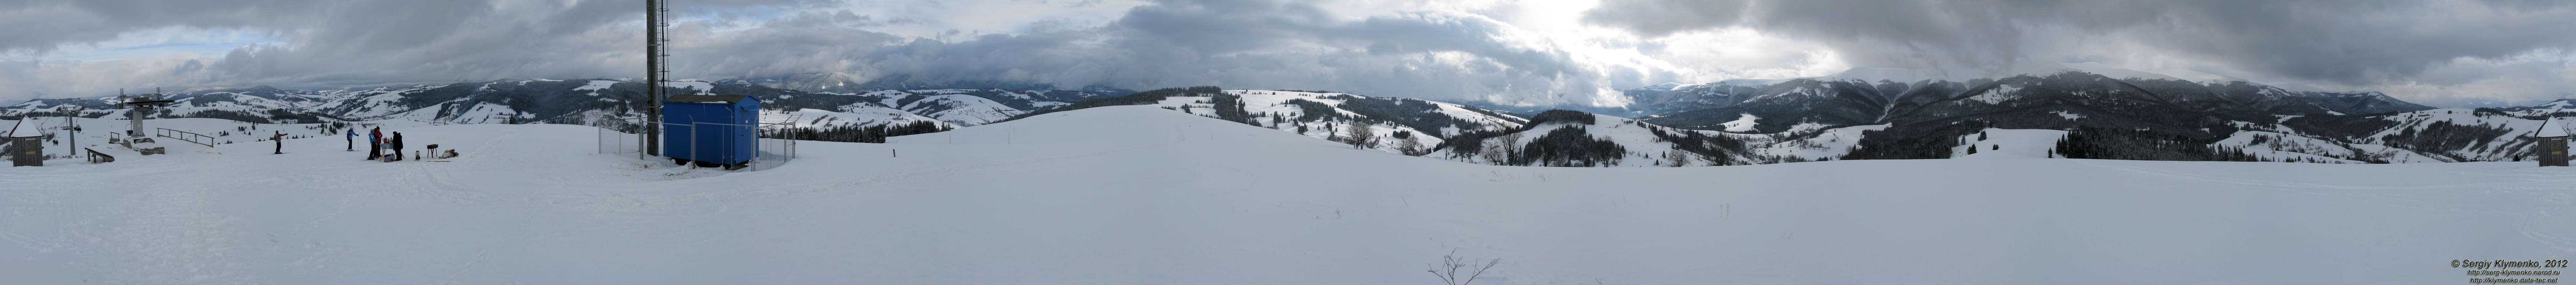 Закарпатская область, горнолыжный курорт Изки. Фото. Возле верхней станции кресельного подъемника. Круговая панорама с вершины горы (360°).